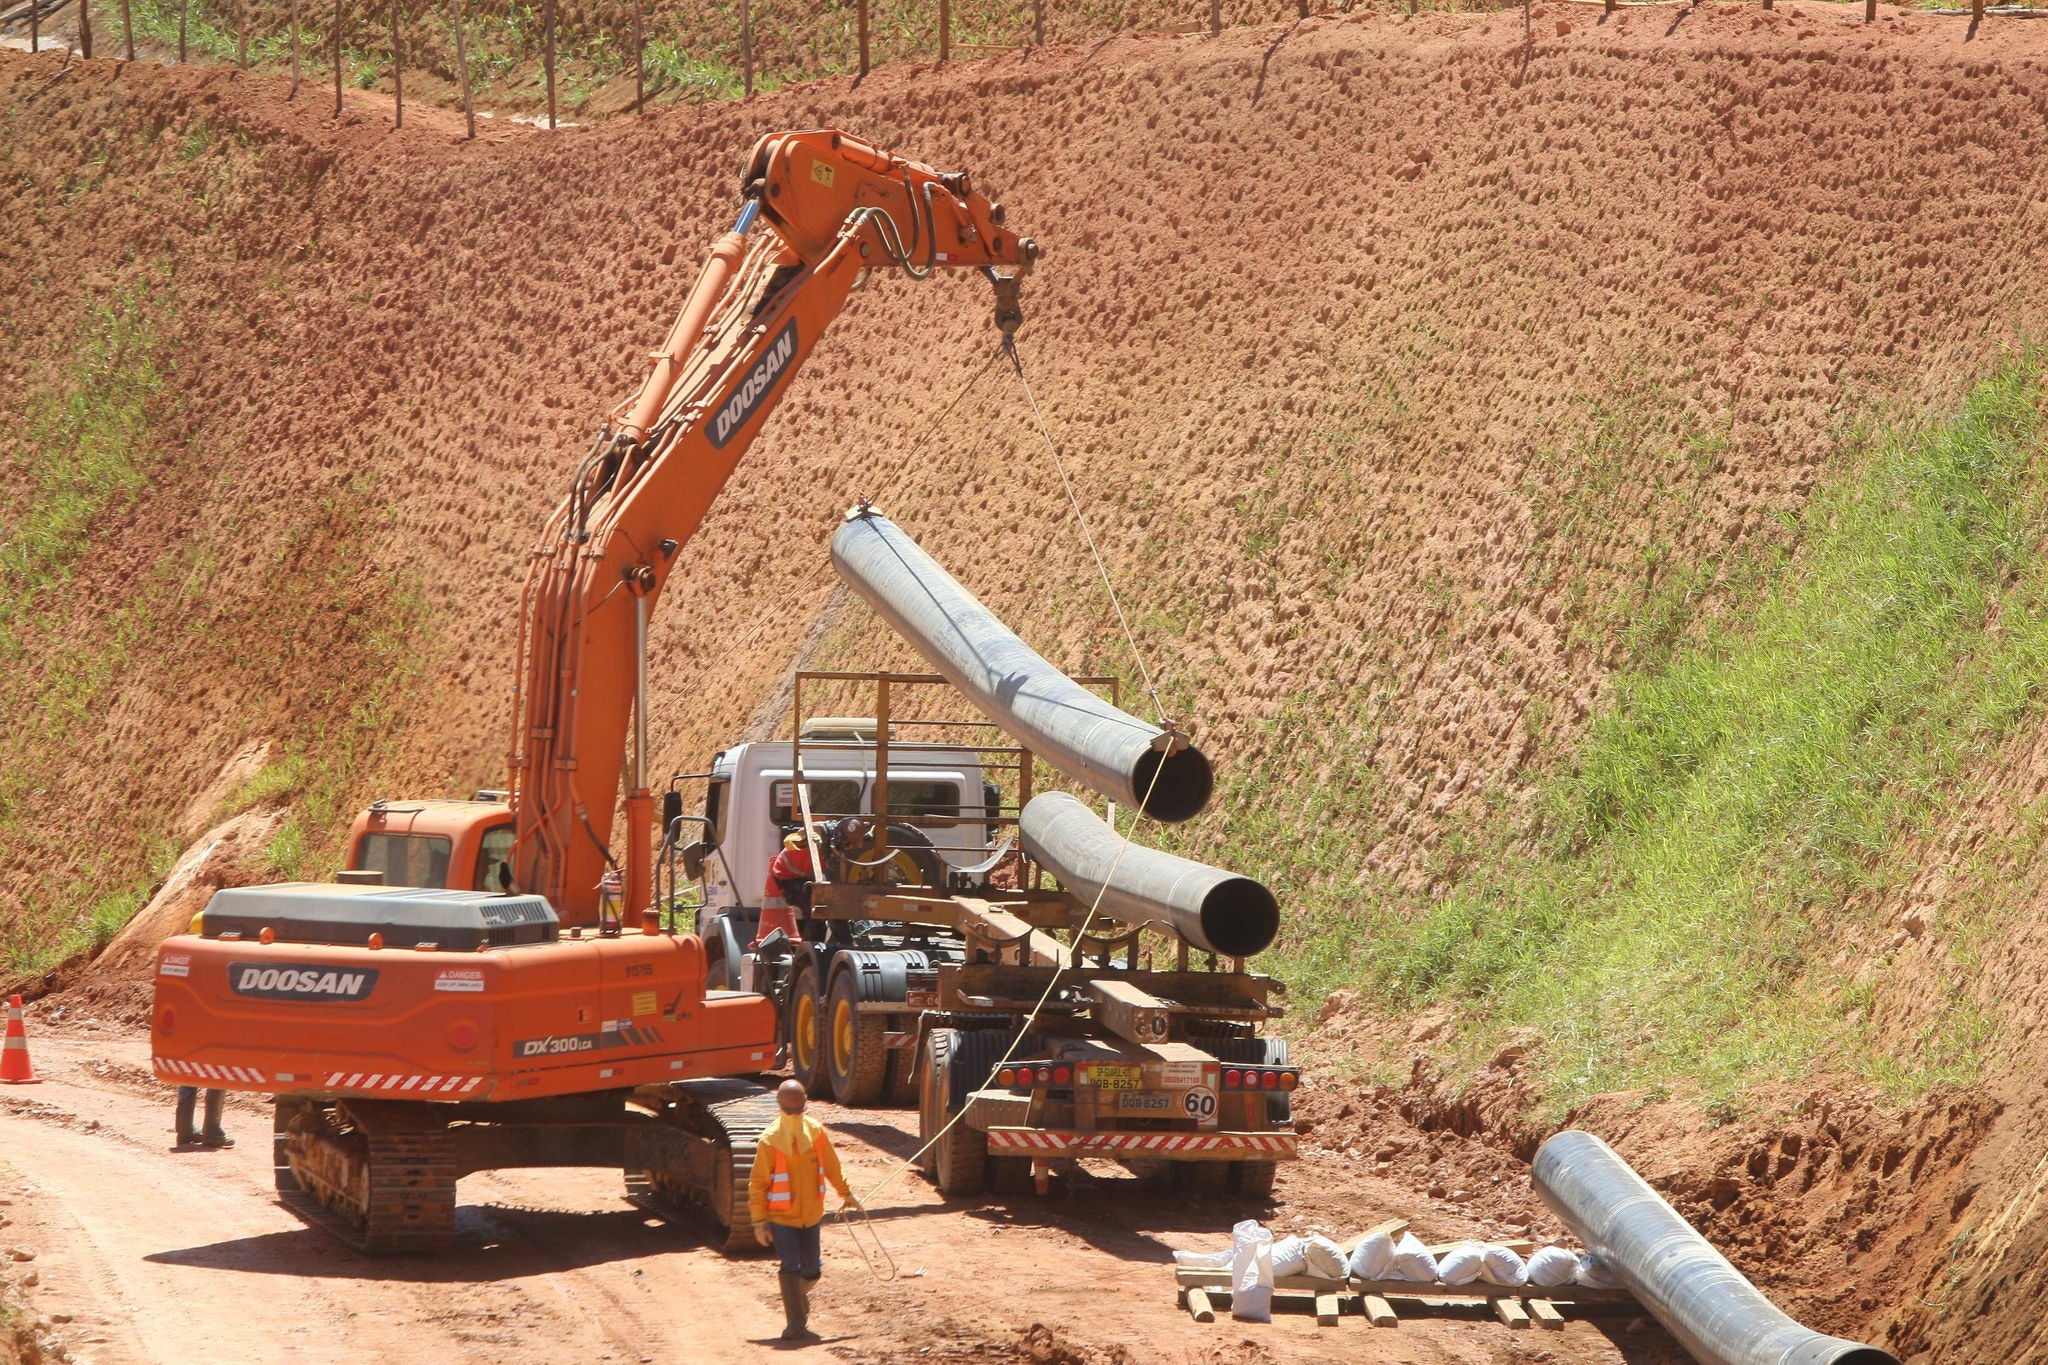 Obras da Anglo American durante construção do mineroduto que liga Conceição do Mato Dentro a São João da Barra (RJ)